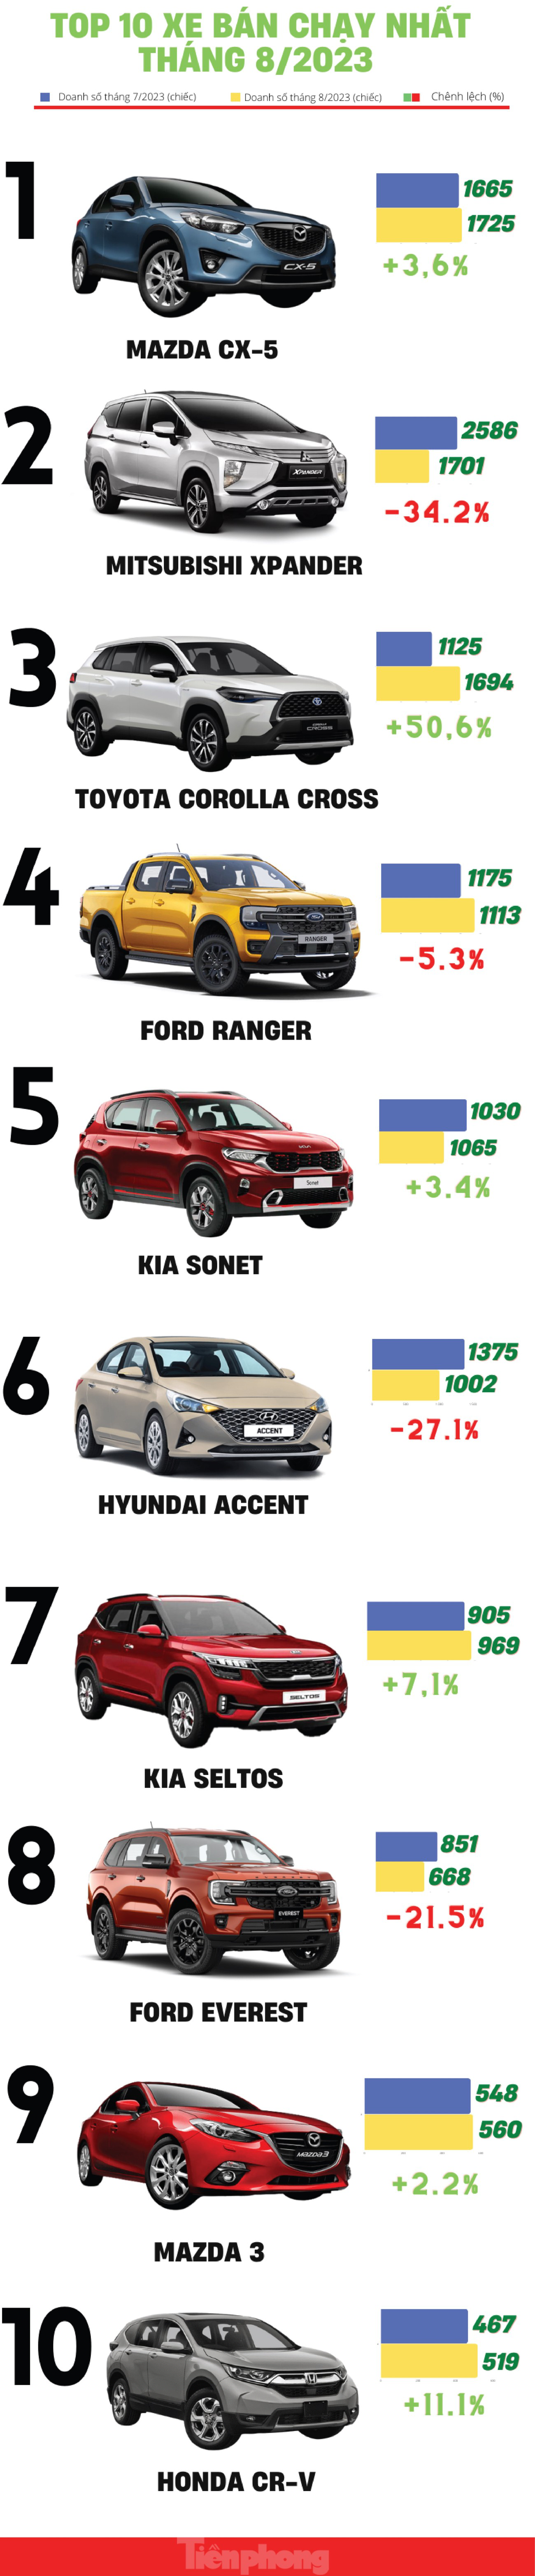 Top 10 ô tô bán chạy nhất thị trường Việt trong tháng 8 - Ảnh 1.